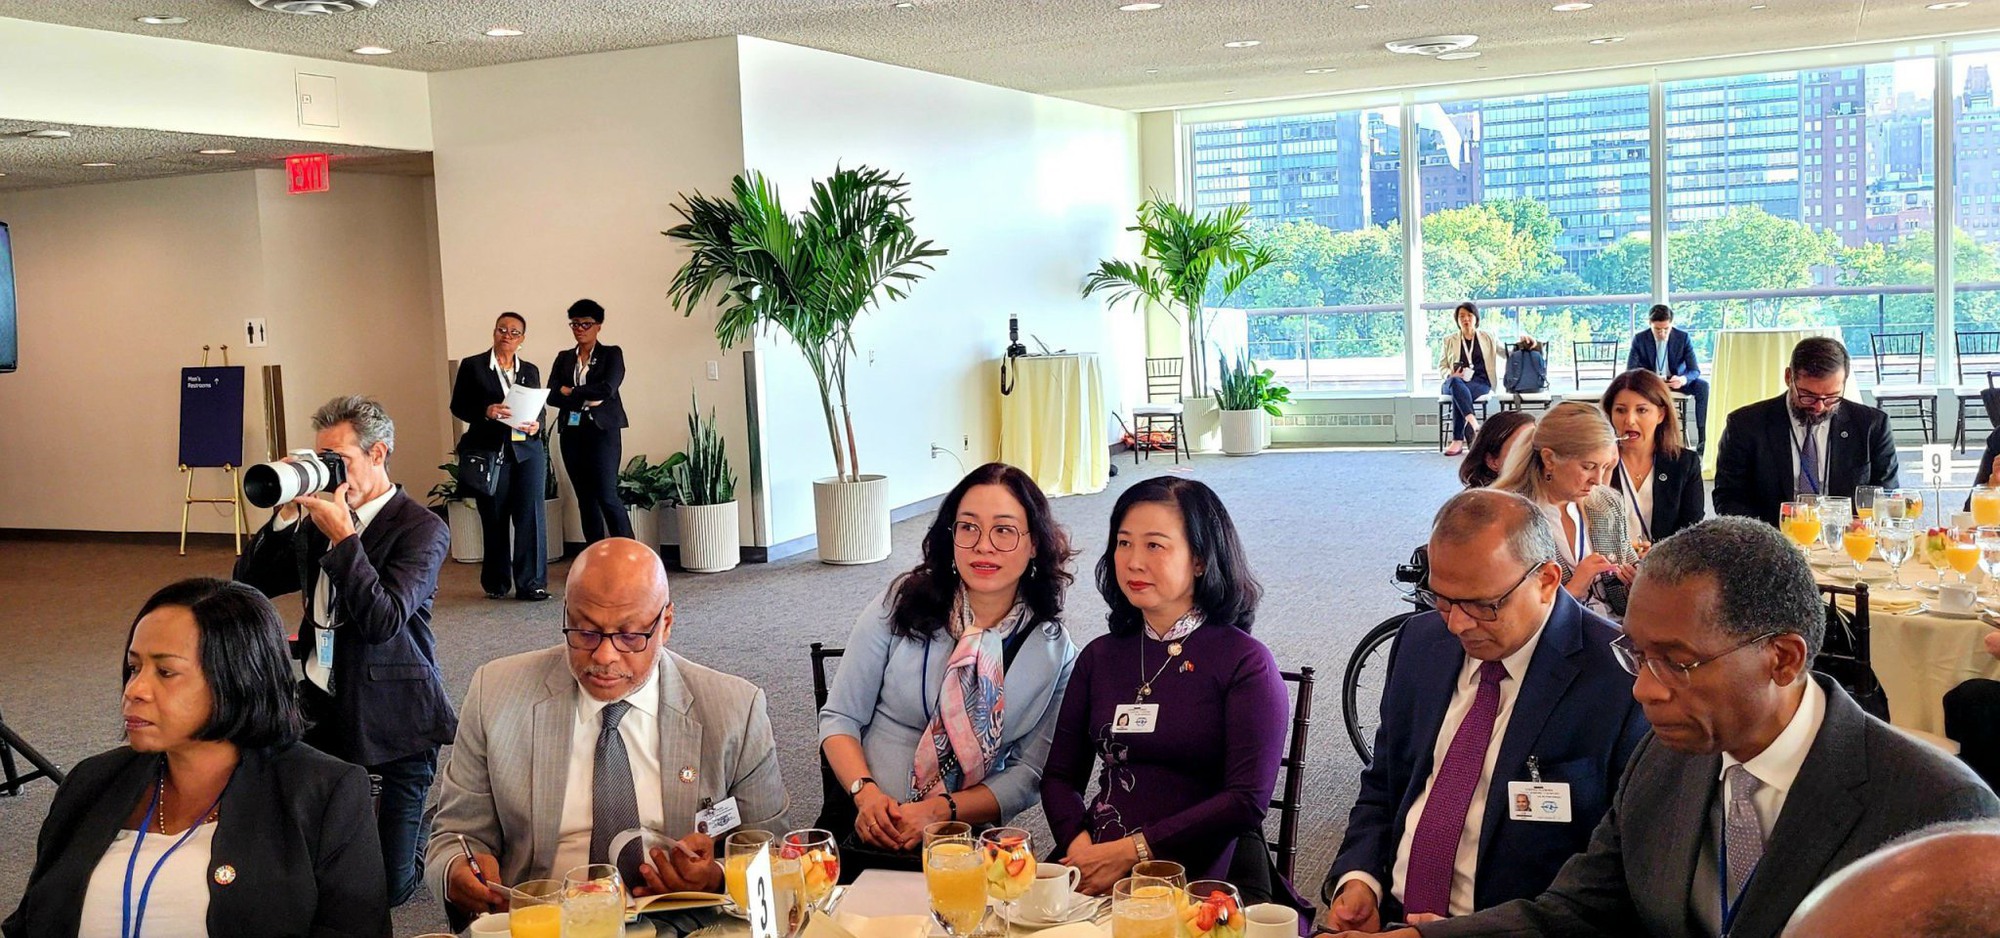 Bộ trưởng Bộ Y tế Đào Hồng Lan dự Hội nghị cấp cao về chấm dứt AIDS của Liên hợp quốc - Ảnh 2.